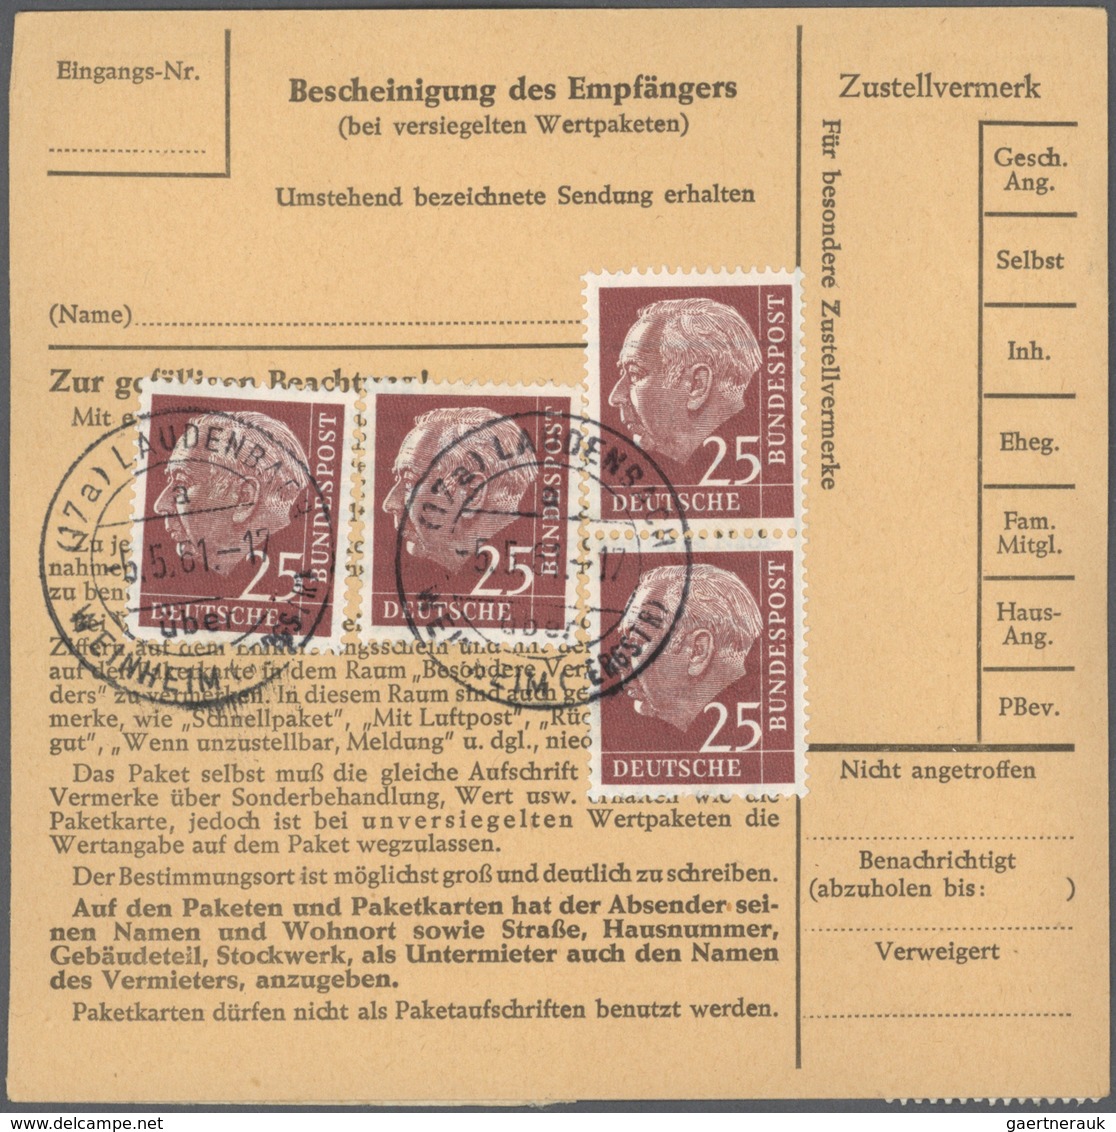 20849 Bundesrepublik Deutschland: 1961, fünf Paketkartenstammteile jeweils mit reiner Mehrfachfrankatur da